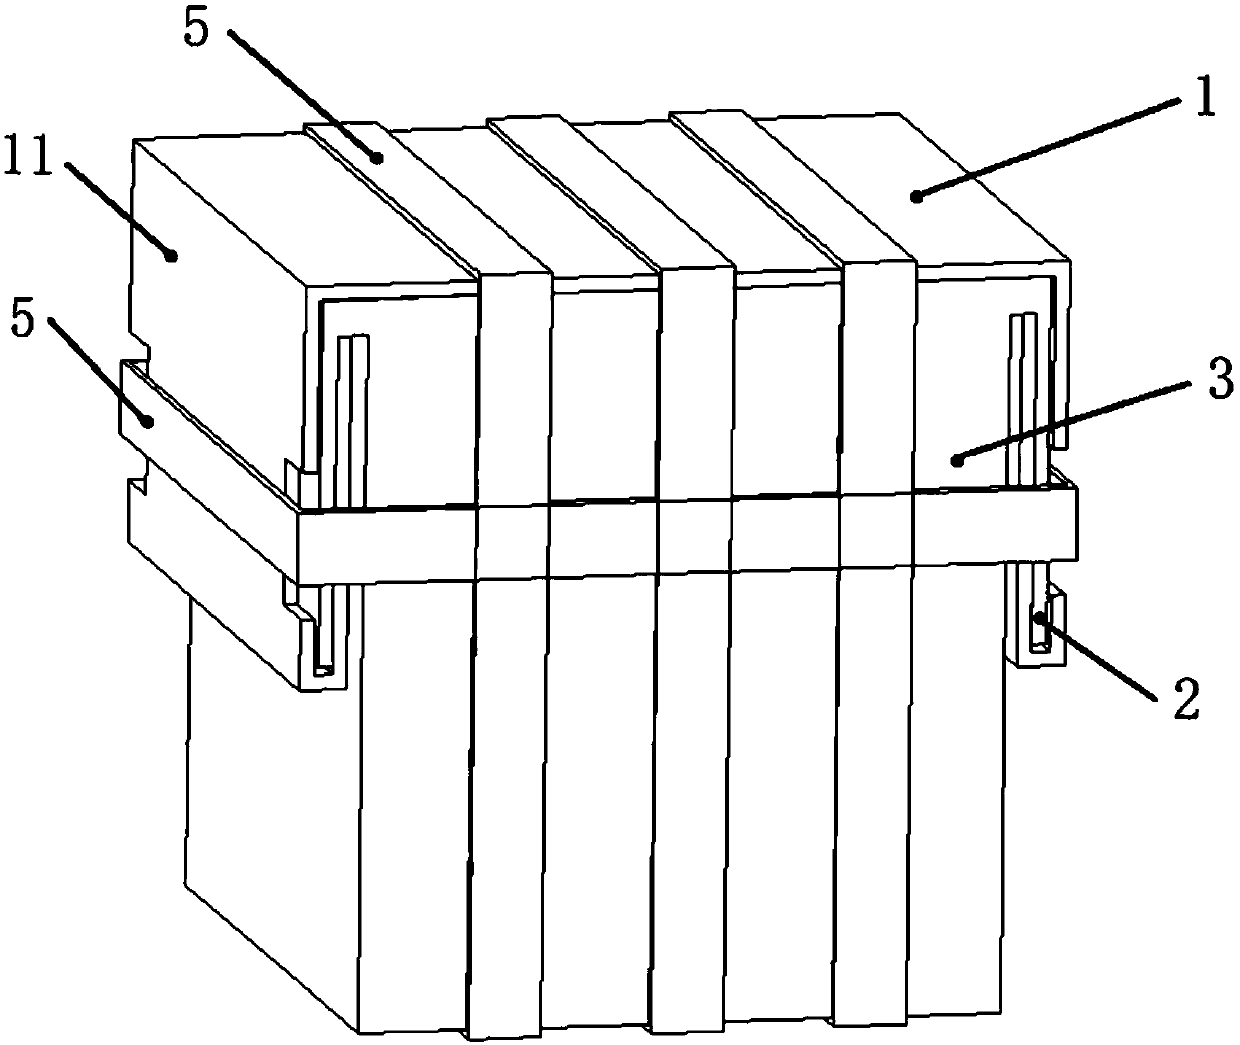 Packaging box for hoisting